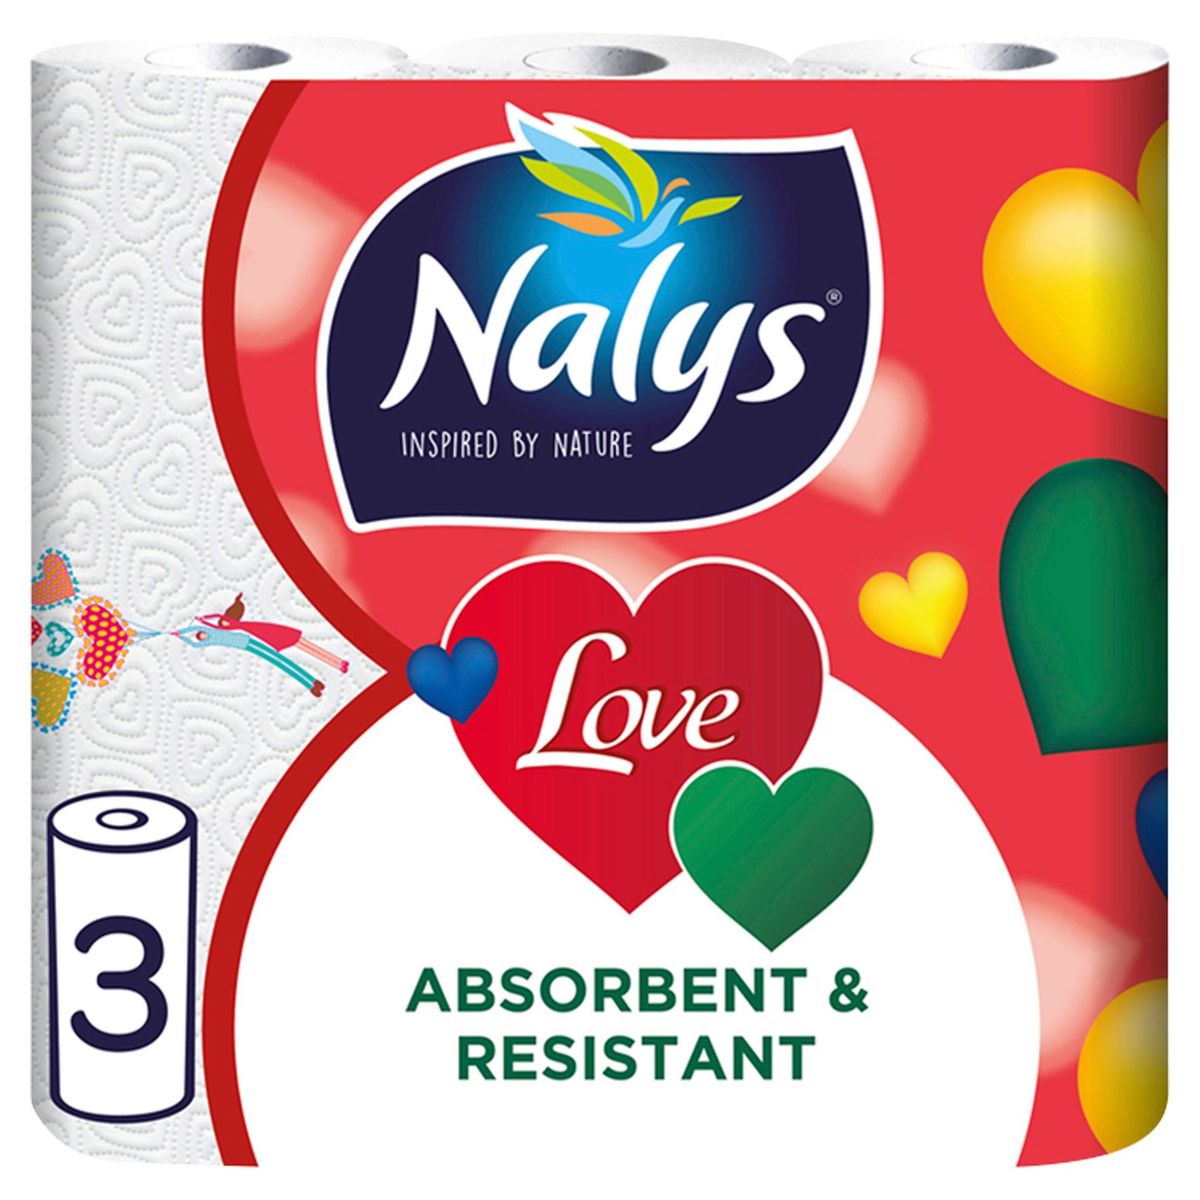 Nalys Love 3-Épaisseurs 3 Pièces